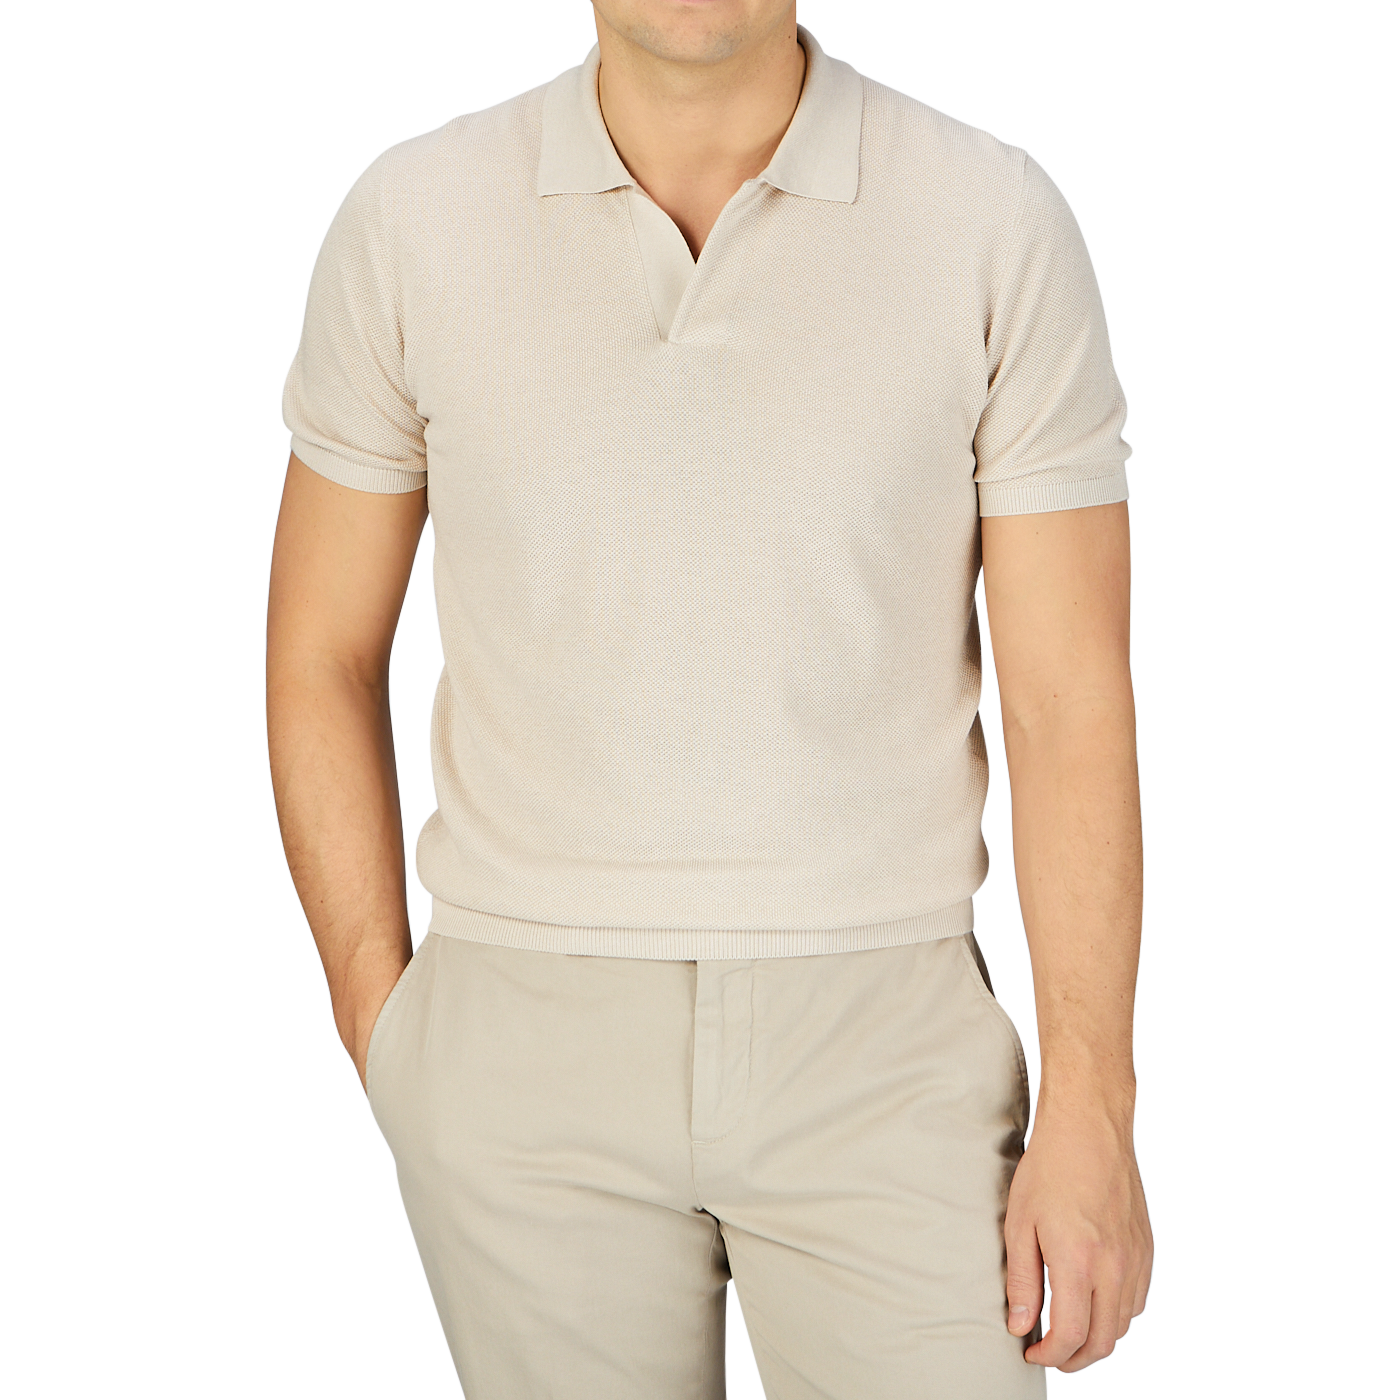 A man in a Mauro Ottaviani Cream Beige Cotton Silk Polo Shirt.